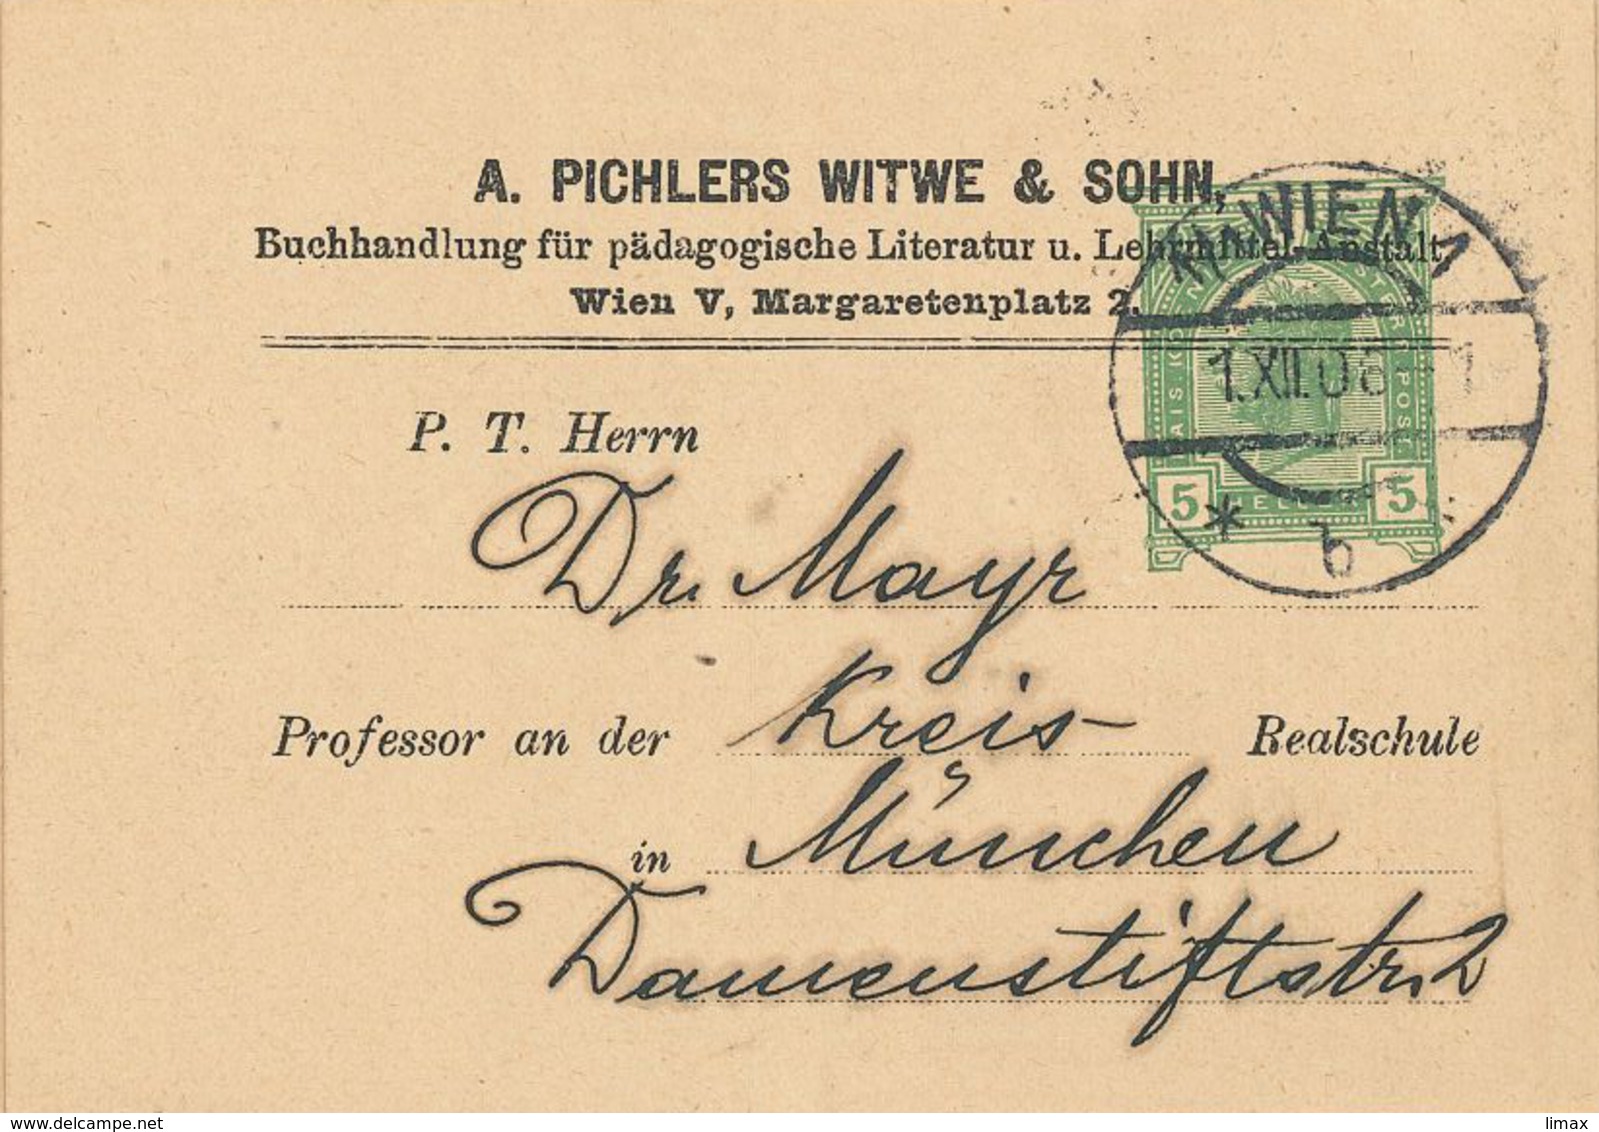 Ganzsache Pichlers Witwe 1906 Wien Buchhandlung Pädagogische Literatur Lehrmittel-Anstalt Briefstück - Covers & Documents